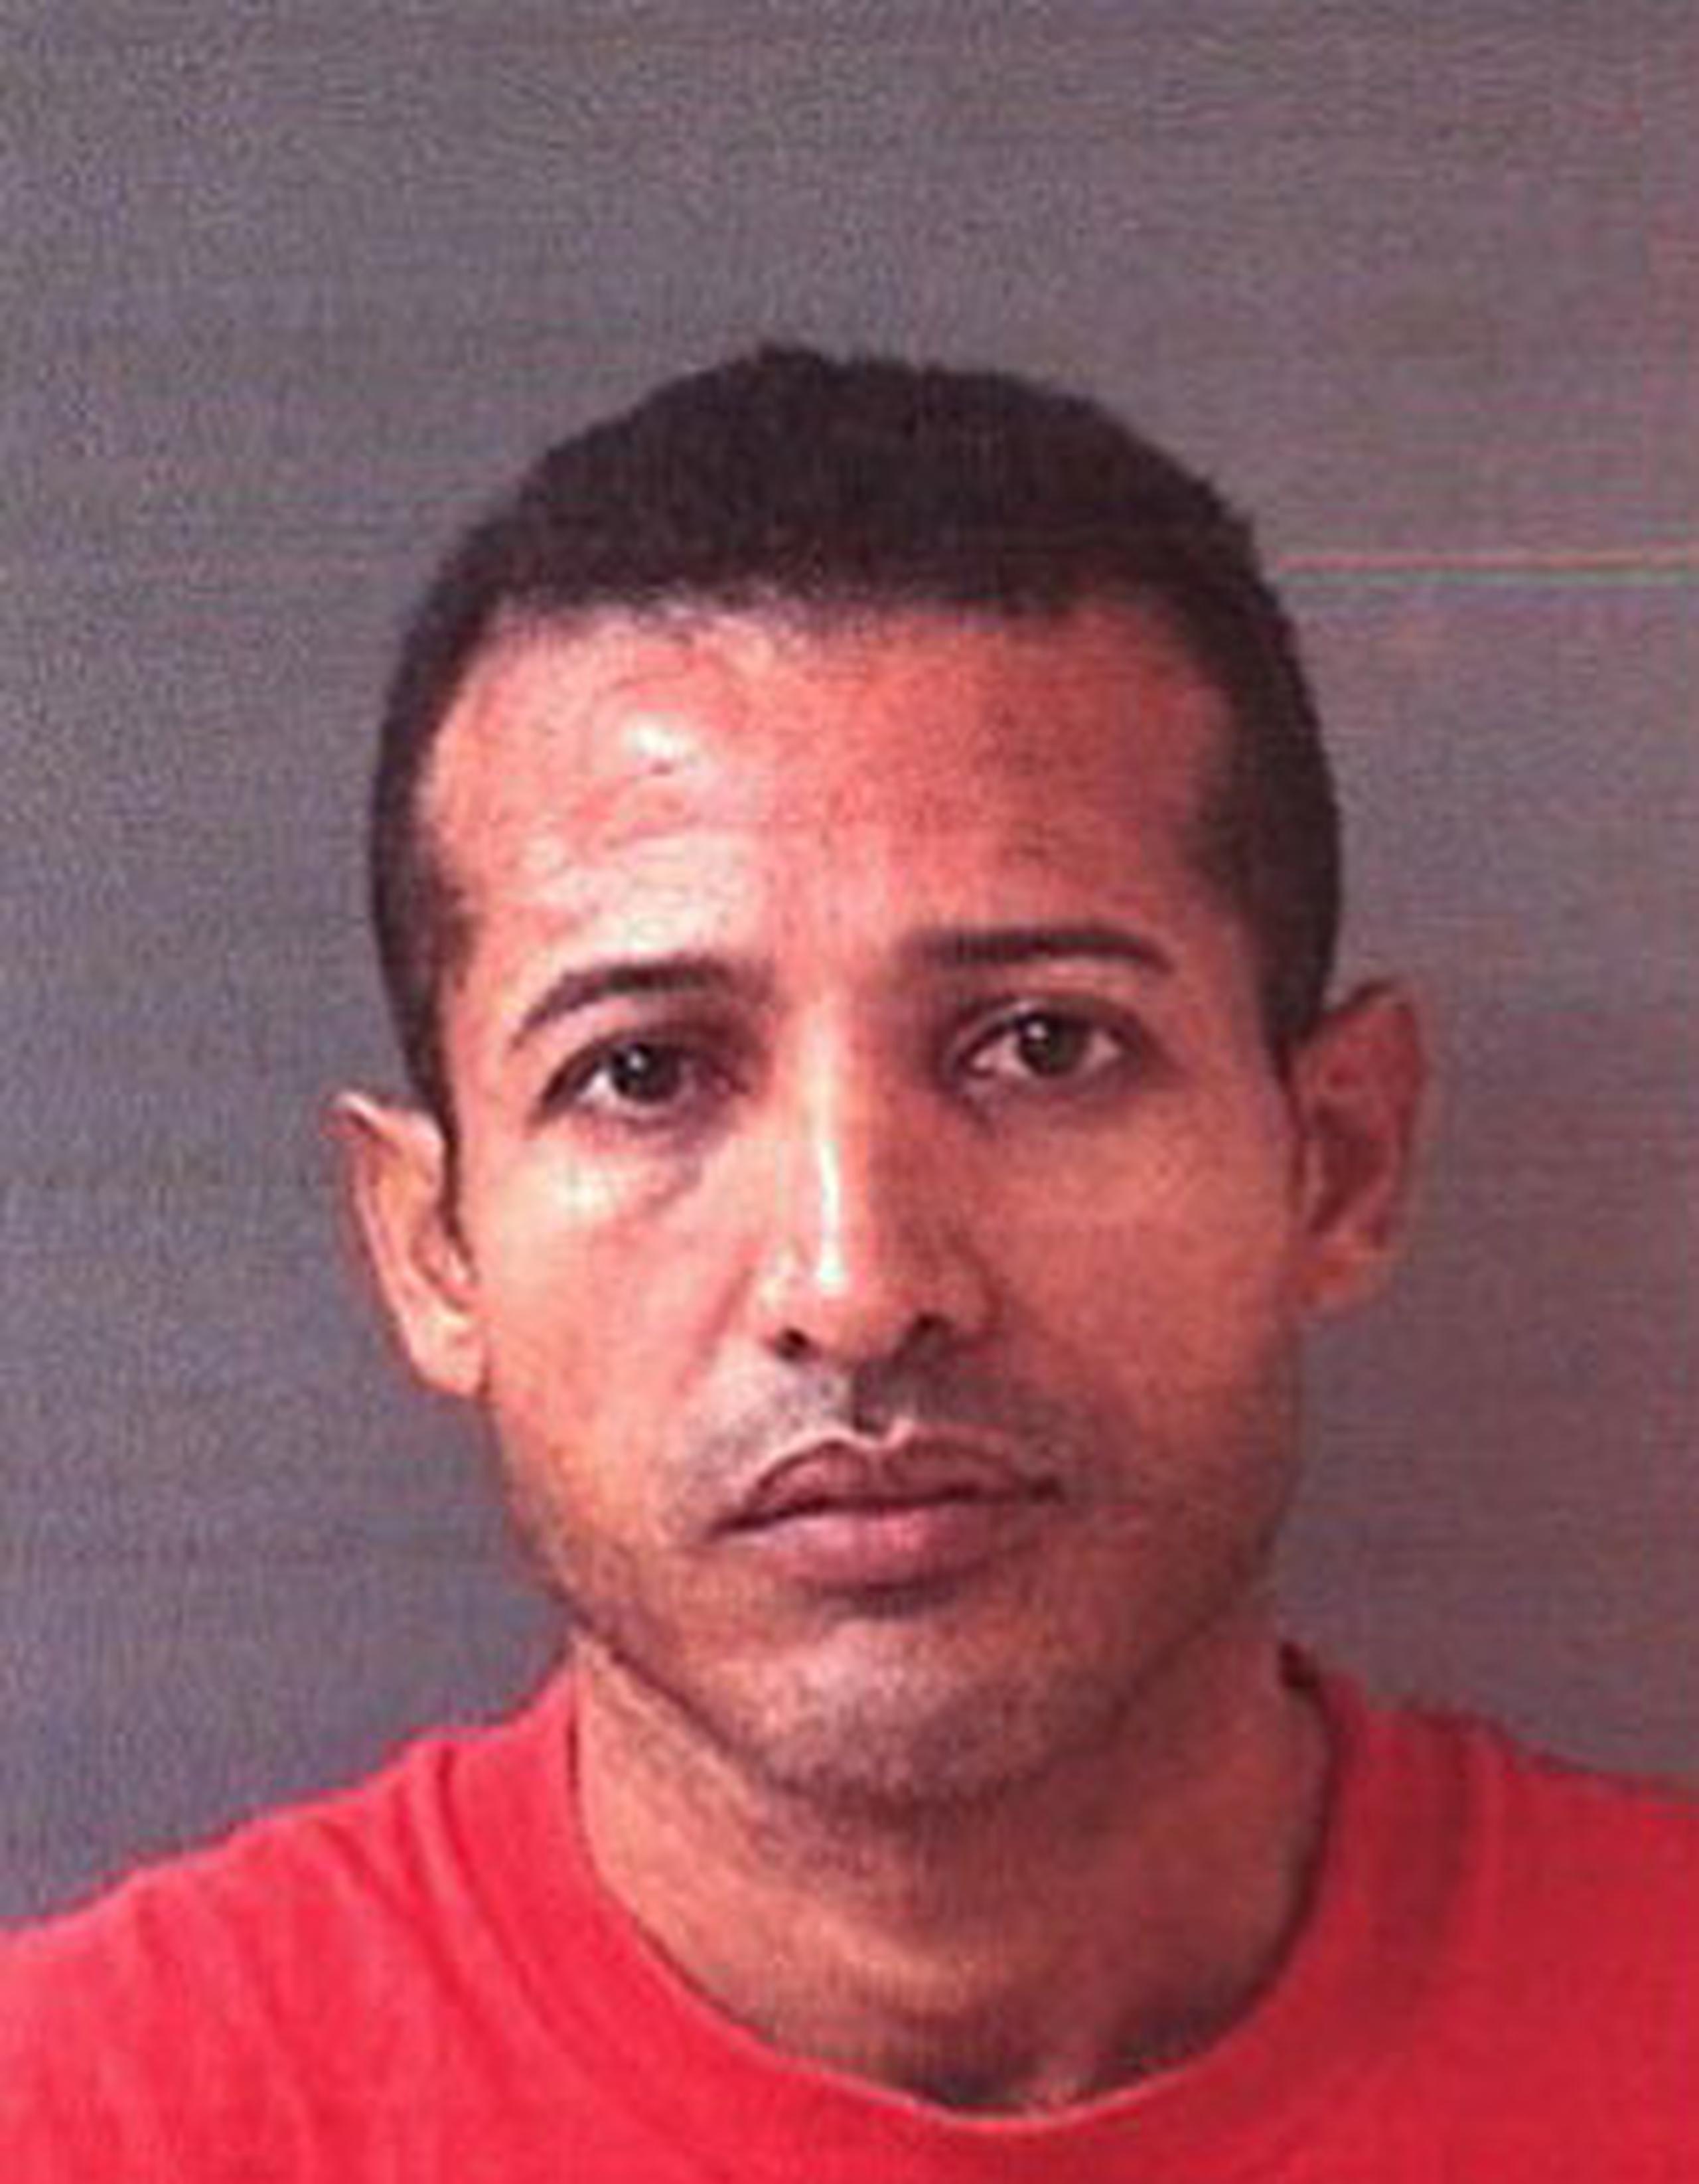 Castillo Santana tiene récord criminal previo por violencia doméstica. Se desconoce el móvil de este asesinato. (Suministrada)